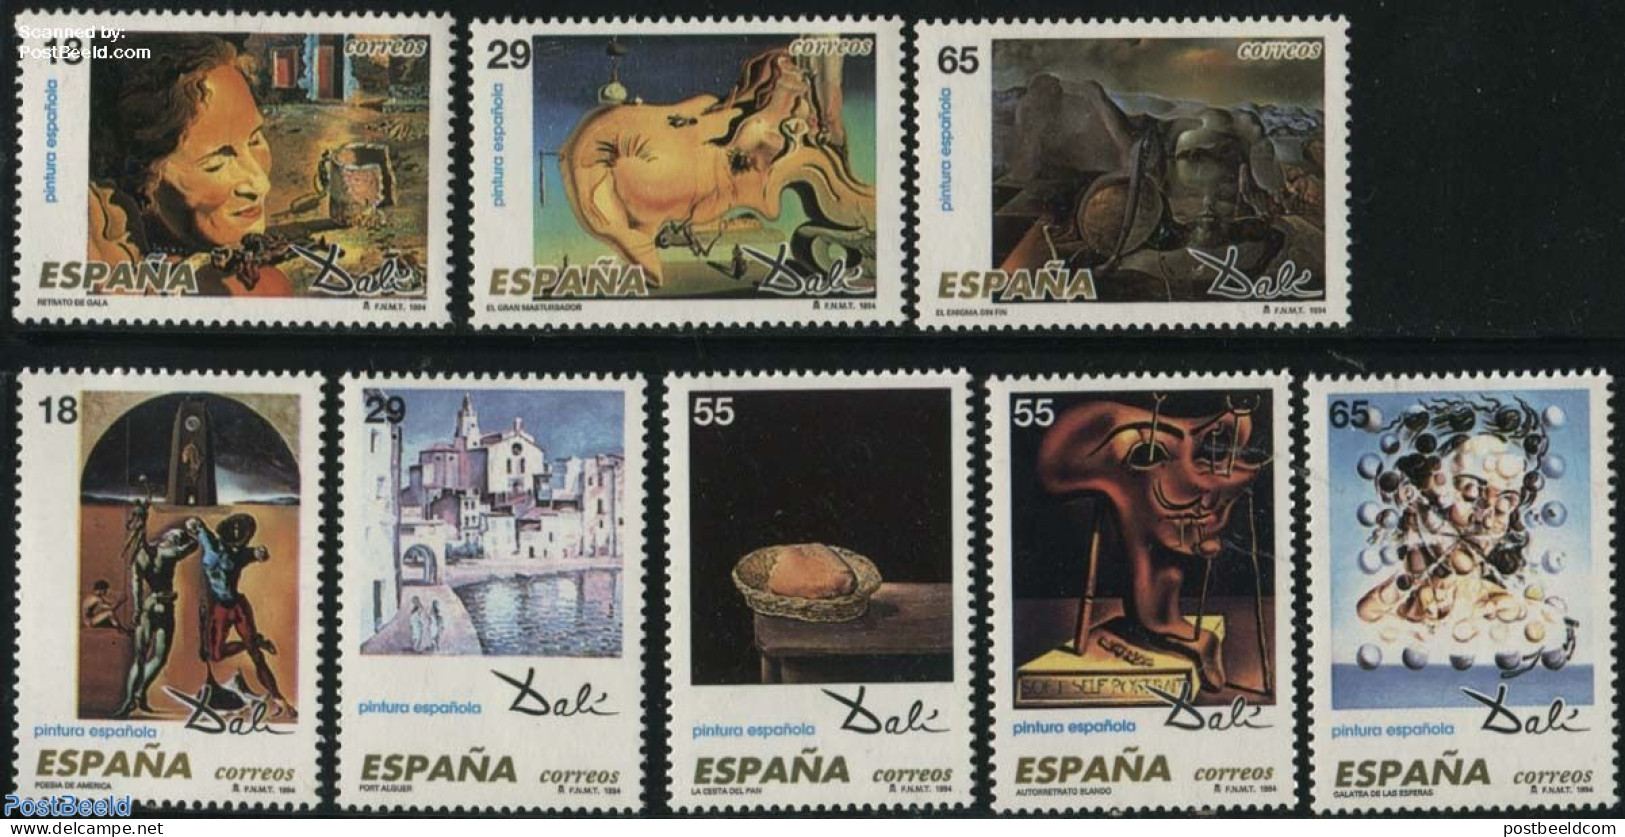 Spain 1994 Salvador Dali 8v, Mint NH, Art - Modern Art (1850-present) - Salvador Dali - Unused Stamps